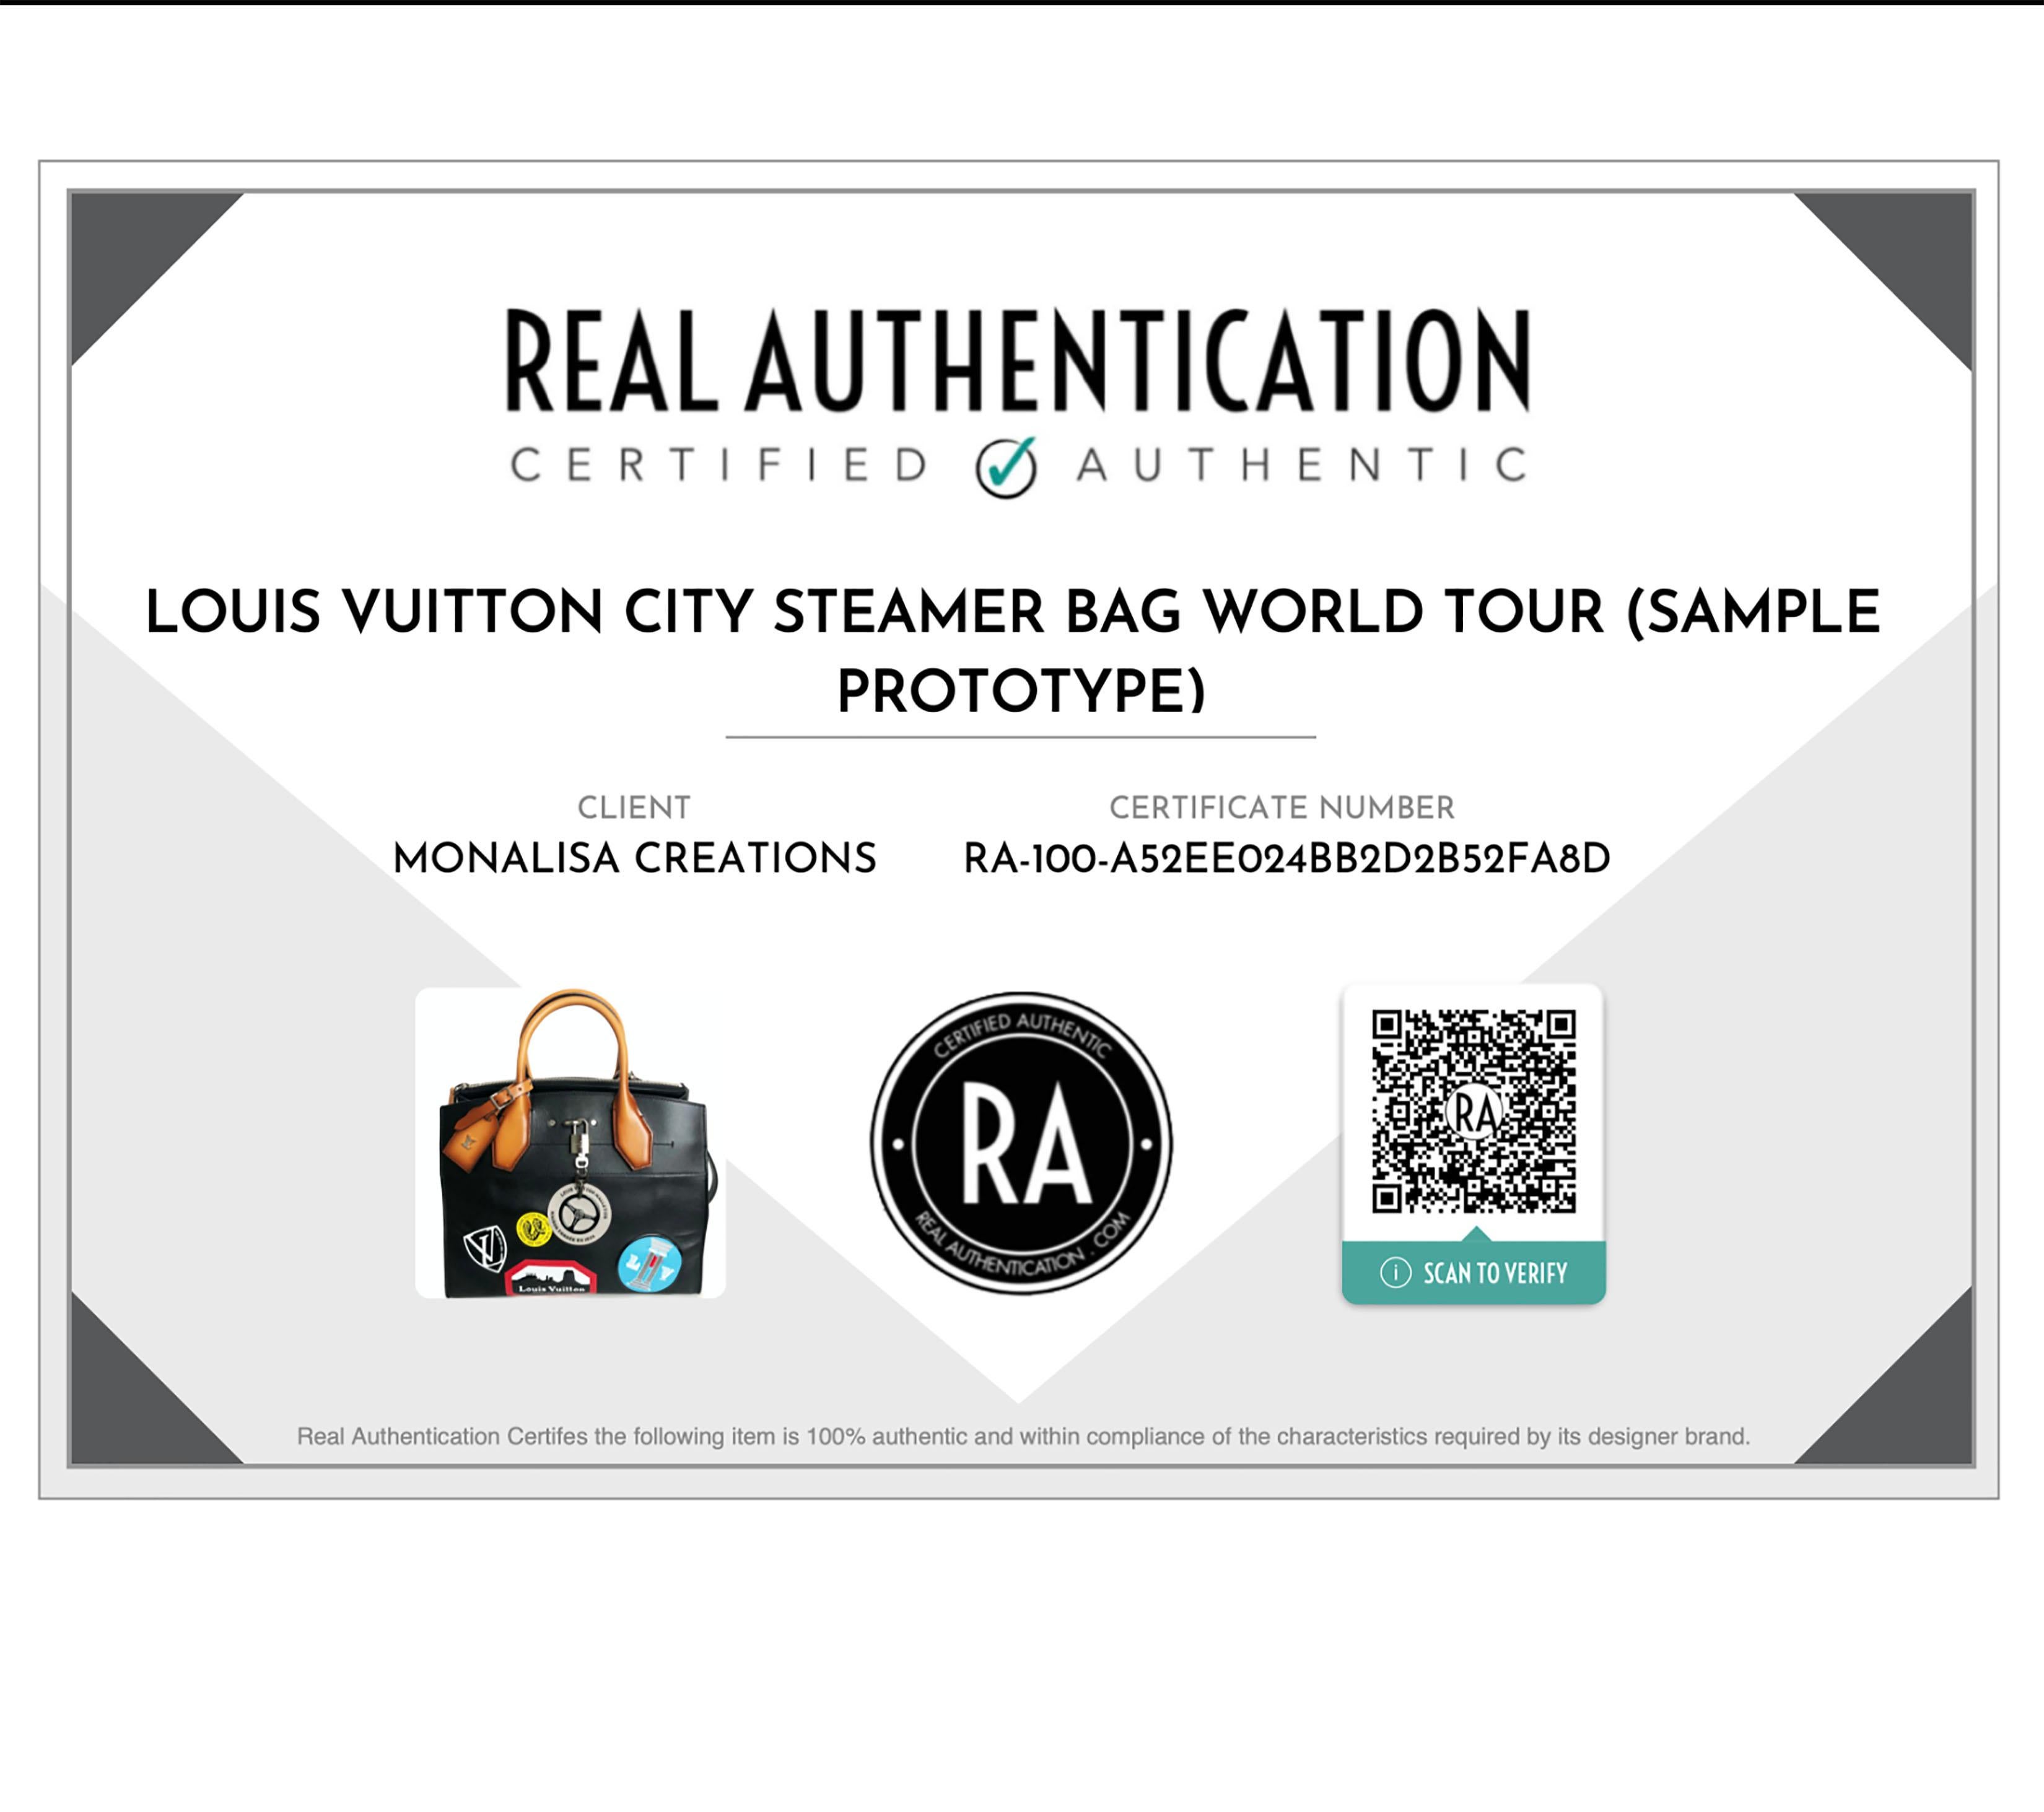 Prototype de sac cabas City Steamer MM World Tour de Louis Vuitton, F/W 2016  13